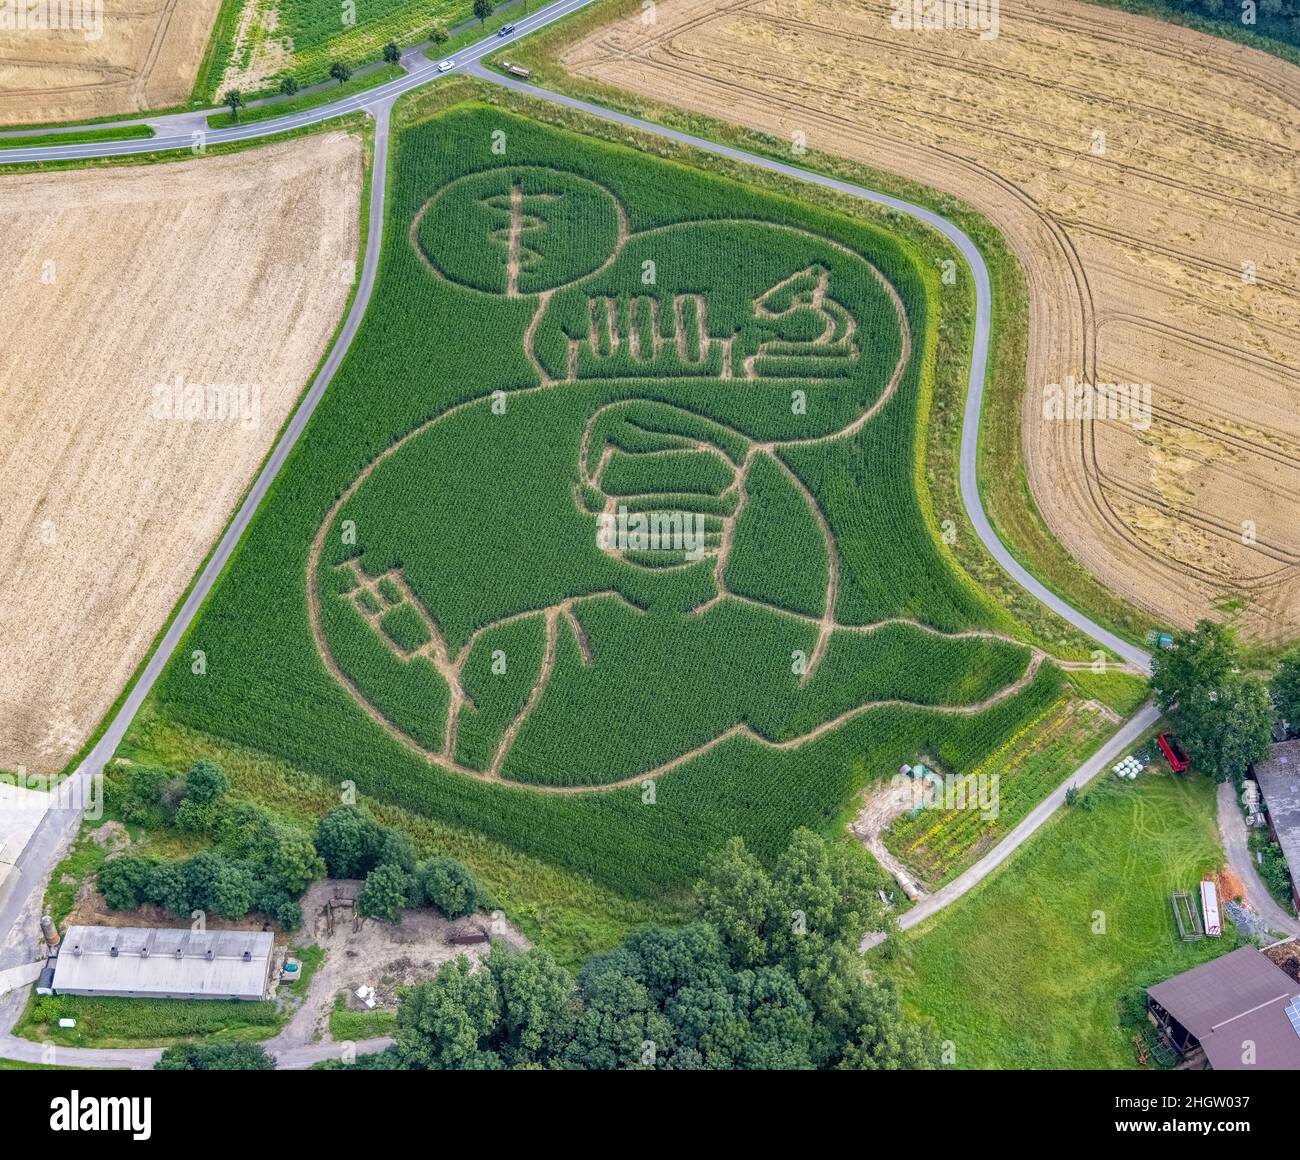 Luftbild, Aerial, Benedikt Lünemann evoca ogni anno un labirinto di mais nel suo campo. Di solito i motivi sono socialmente critici o politici. Quest'anno Foto Stock